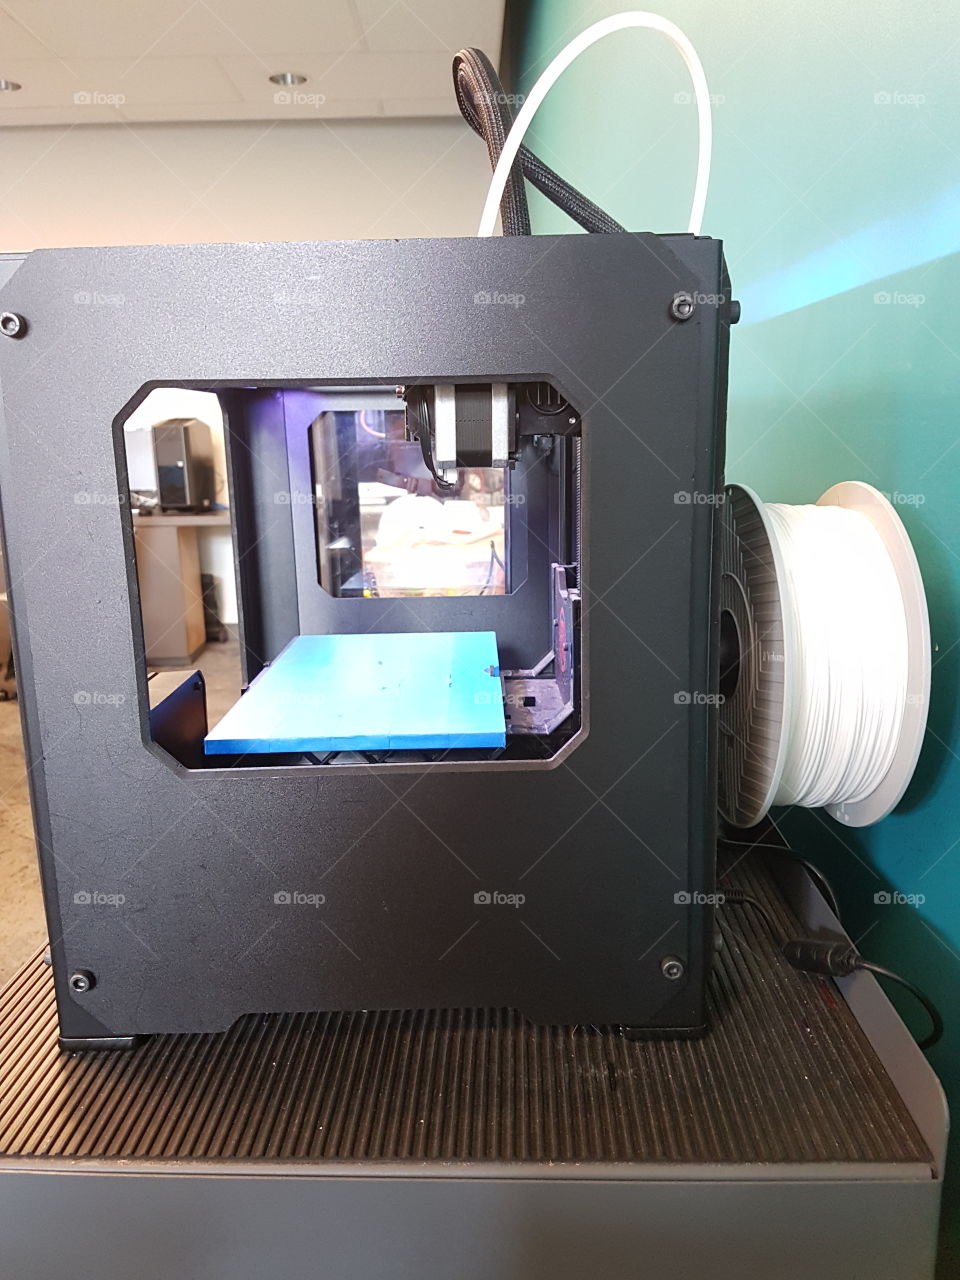 MakerBot Raplicator 2 3D printer